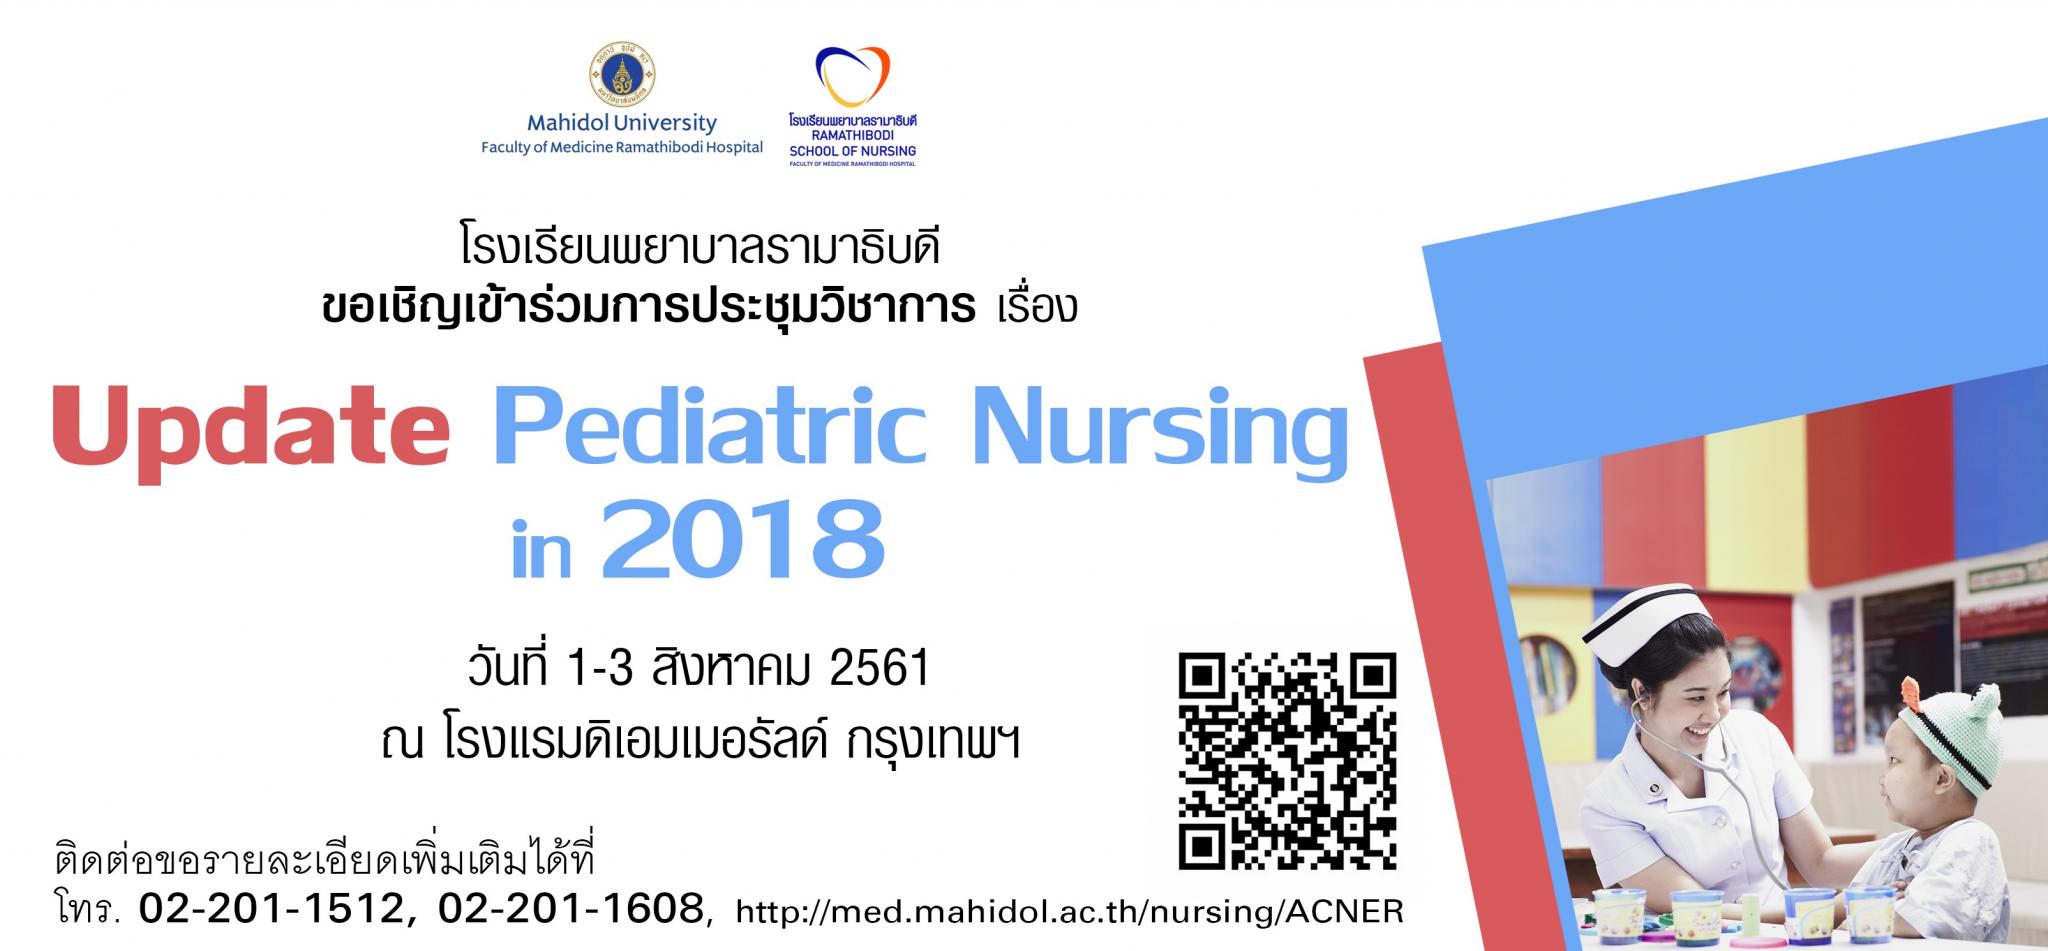 ขอเชิญเข้าร่วมการประชุมวิชาการเรื่อง Update Pediatric Nursing in 2018